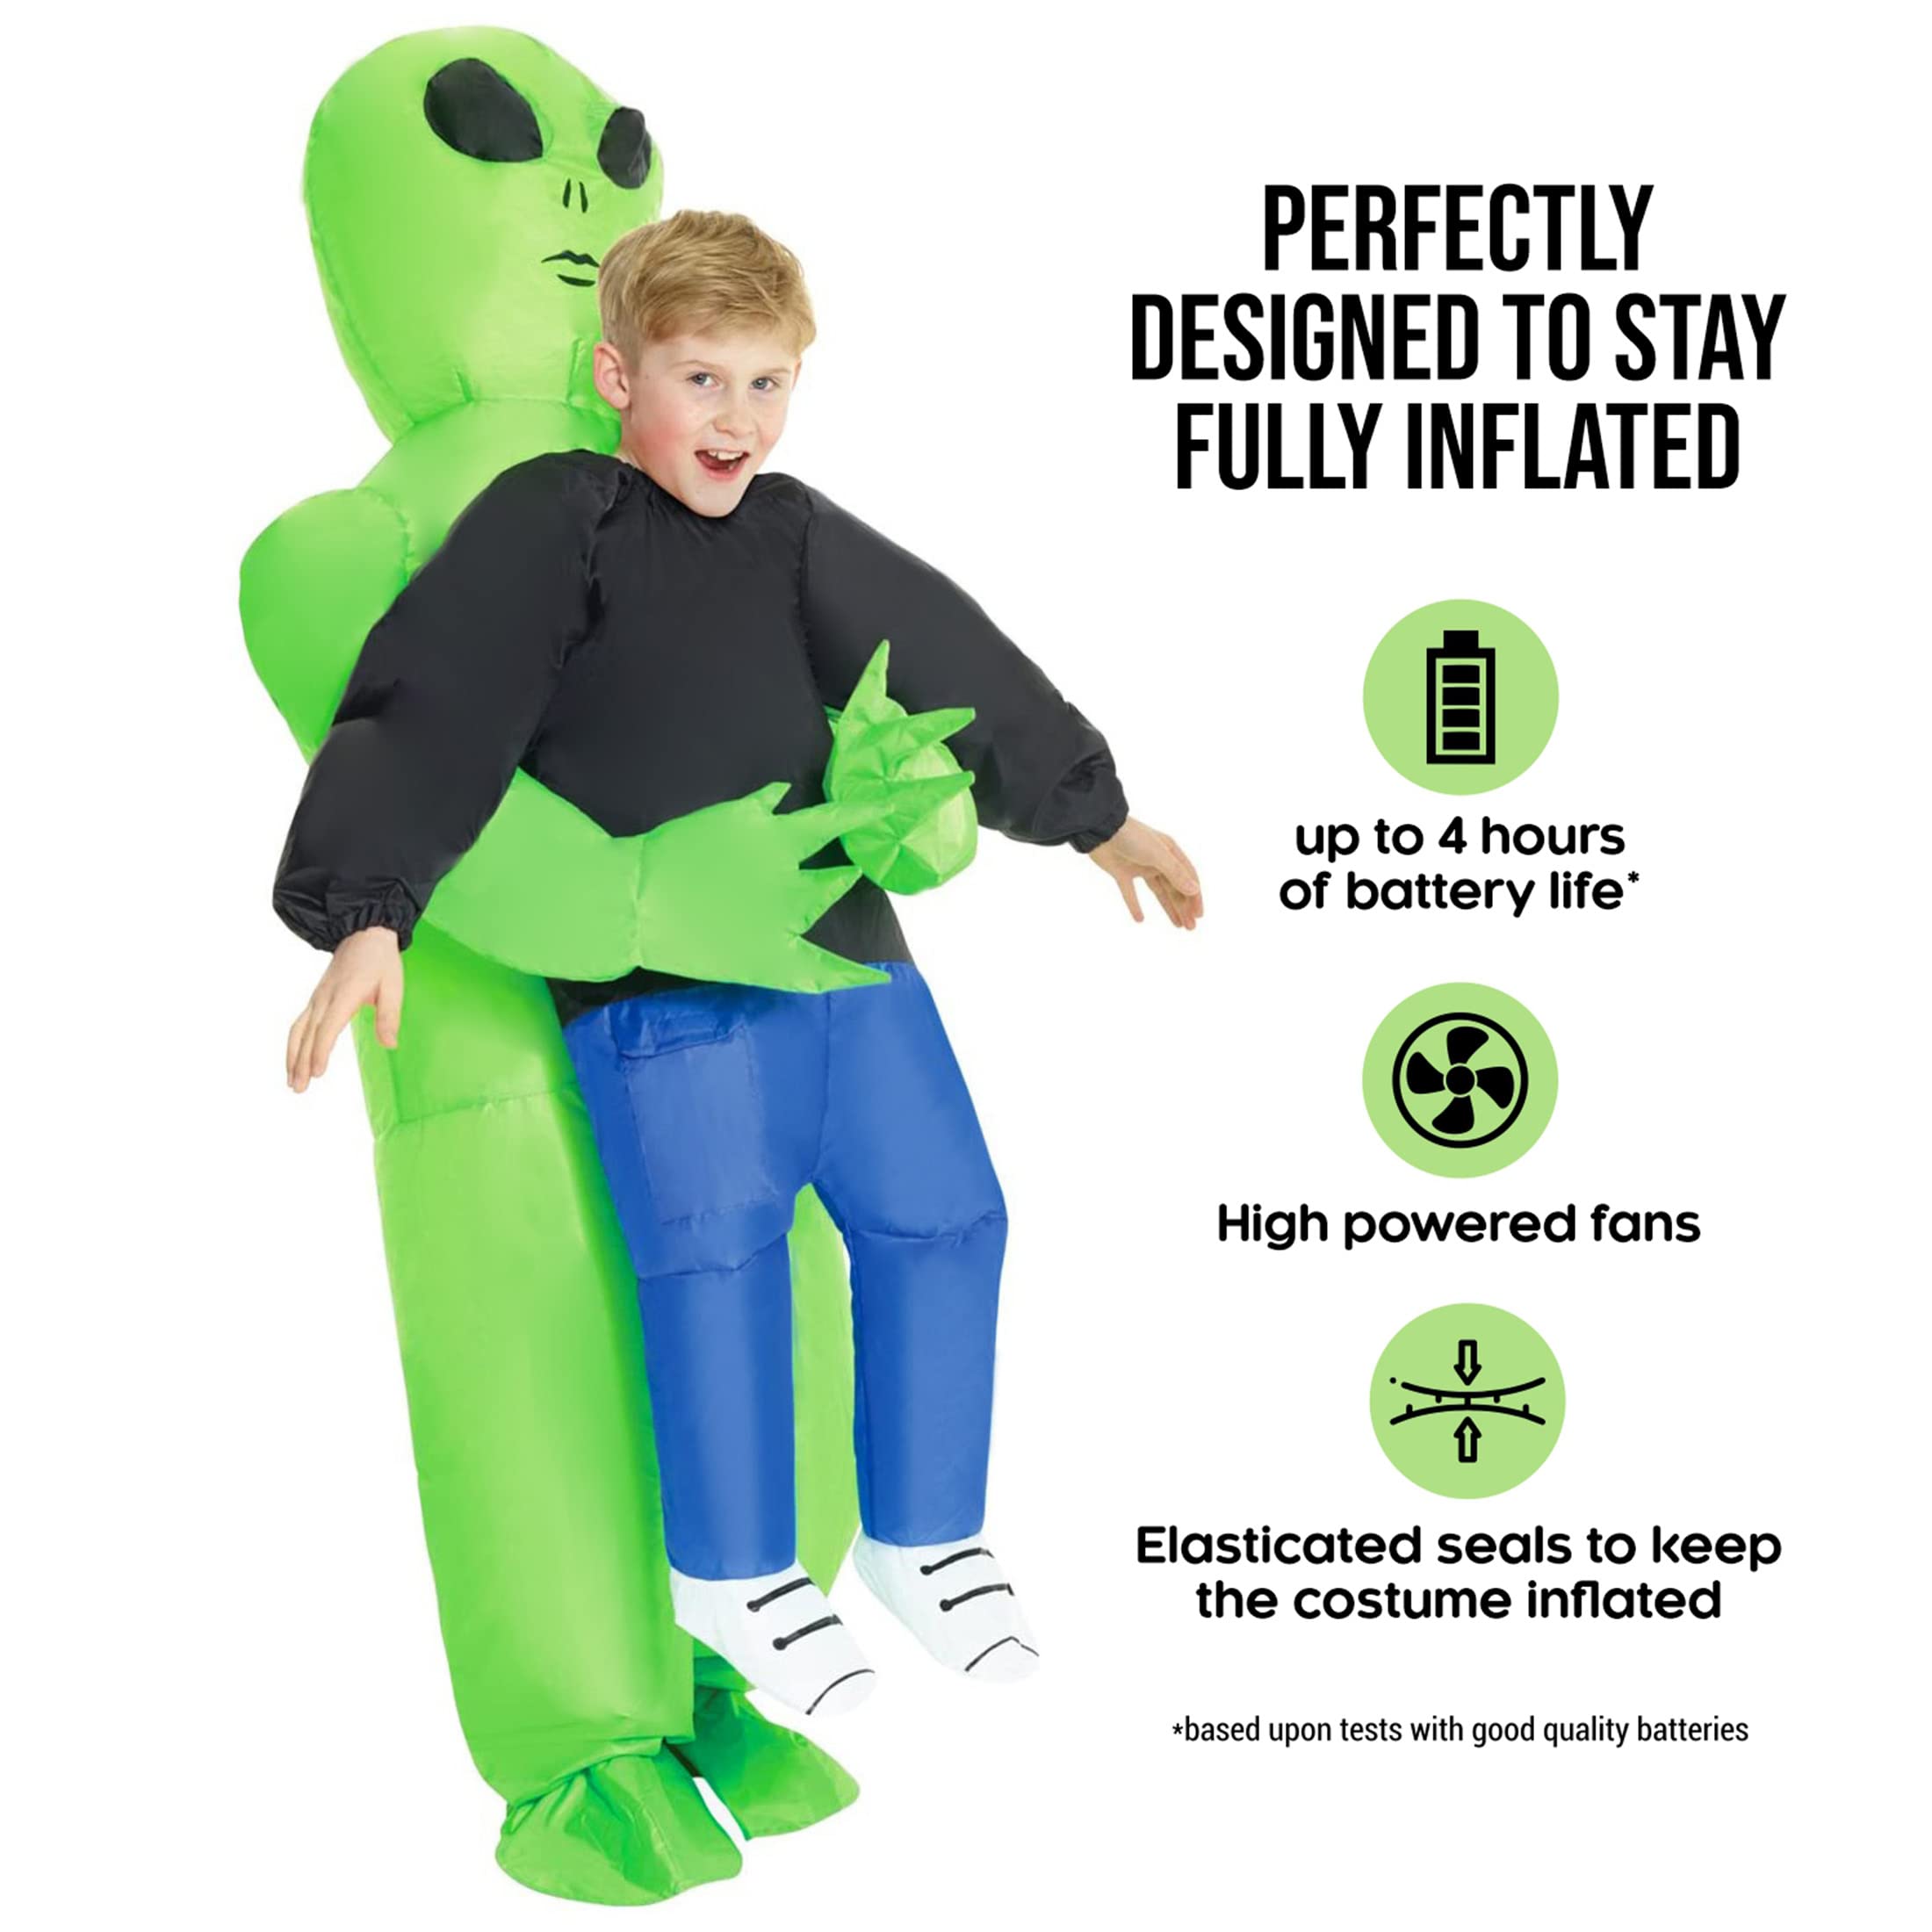 Morph Green Inflatable Alien Costume Kids Inflatable Costumes For Kids Blow Up Halloween Costumes For Kids Boys Girls